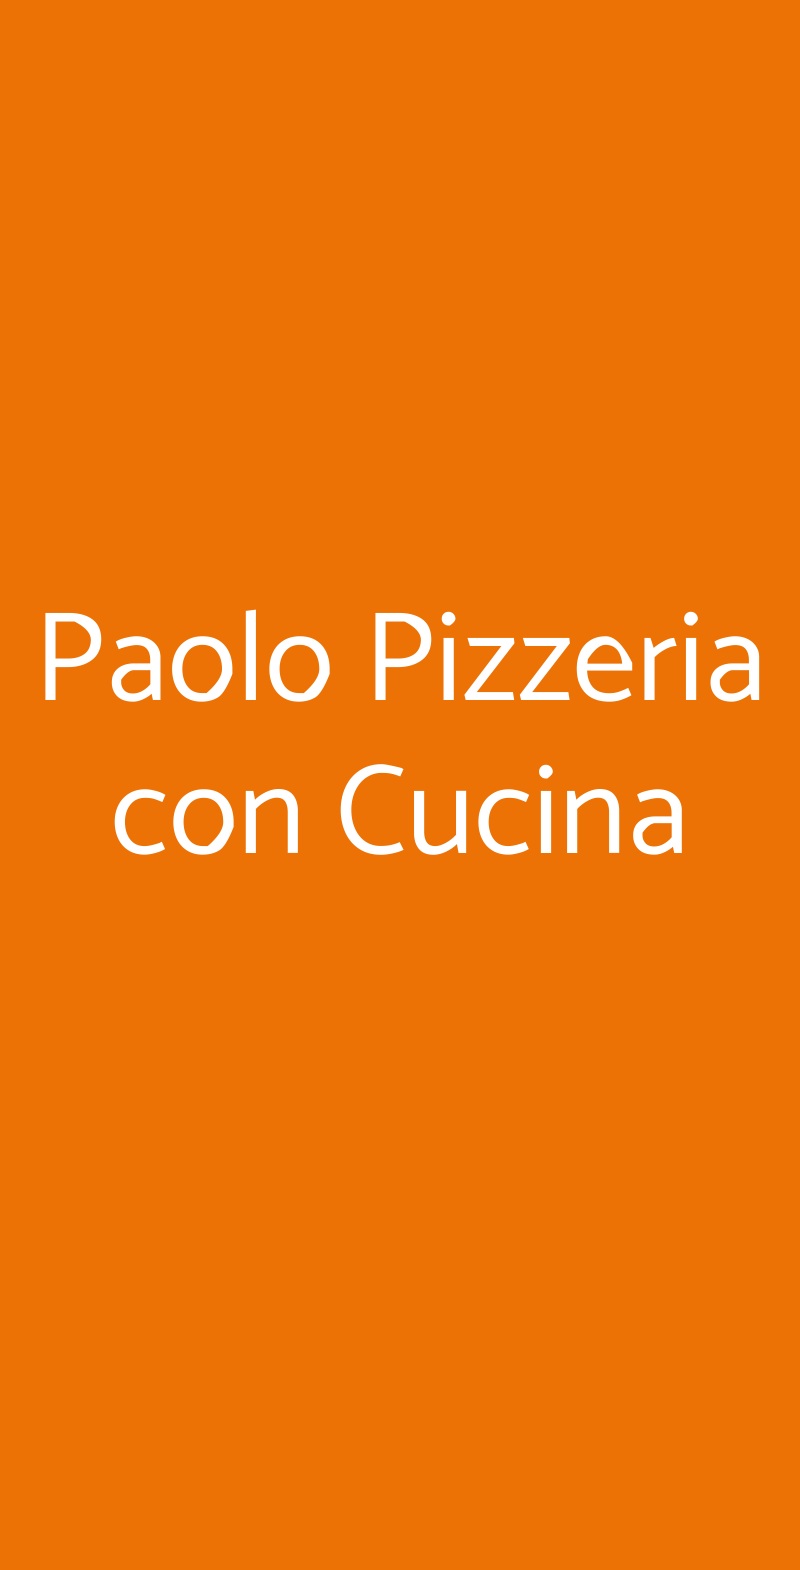 Paolo Pizzeria con Cucina Villafranca di Verona menù 1 pagina